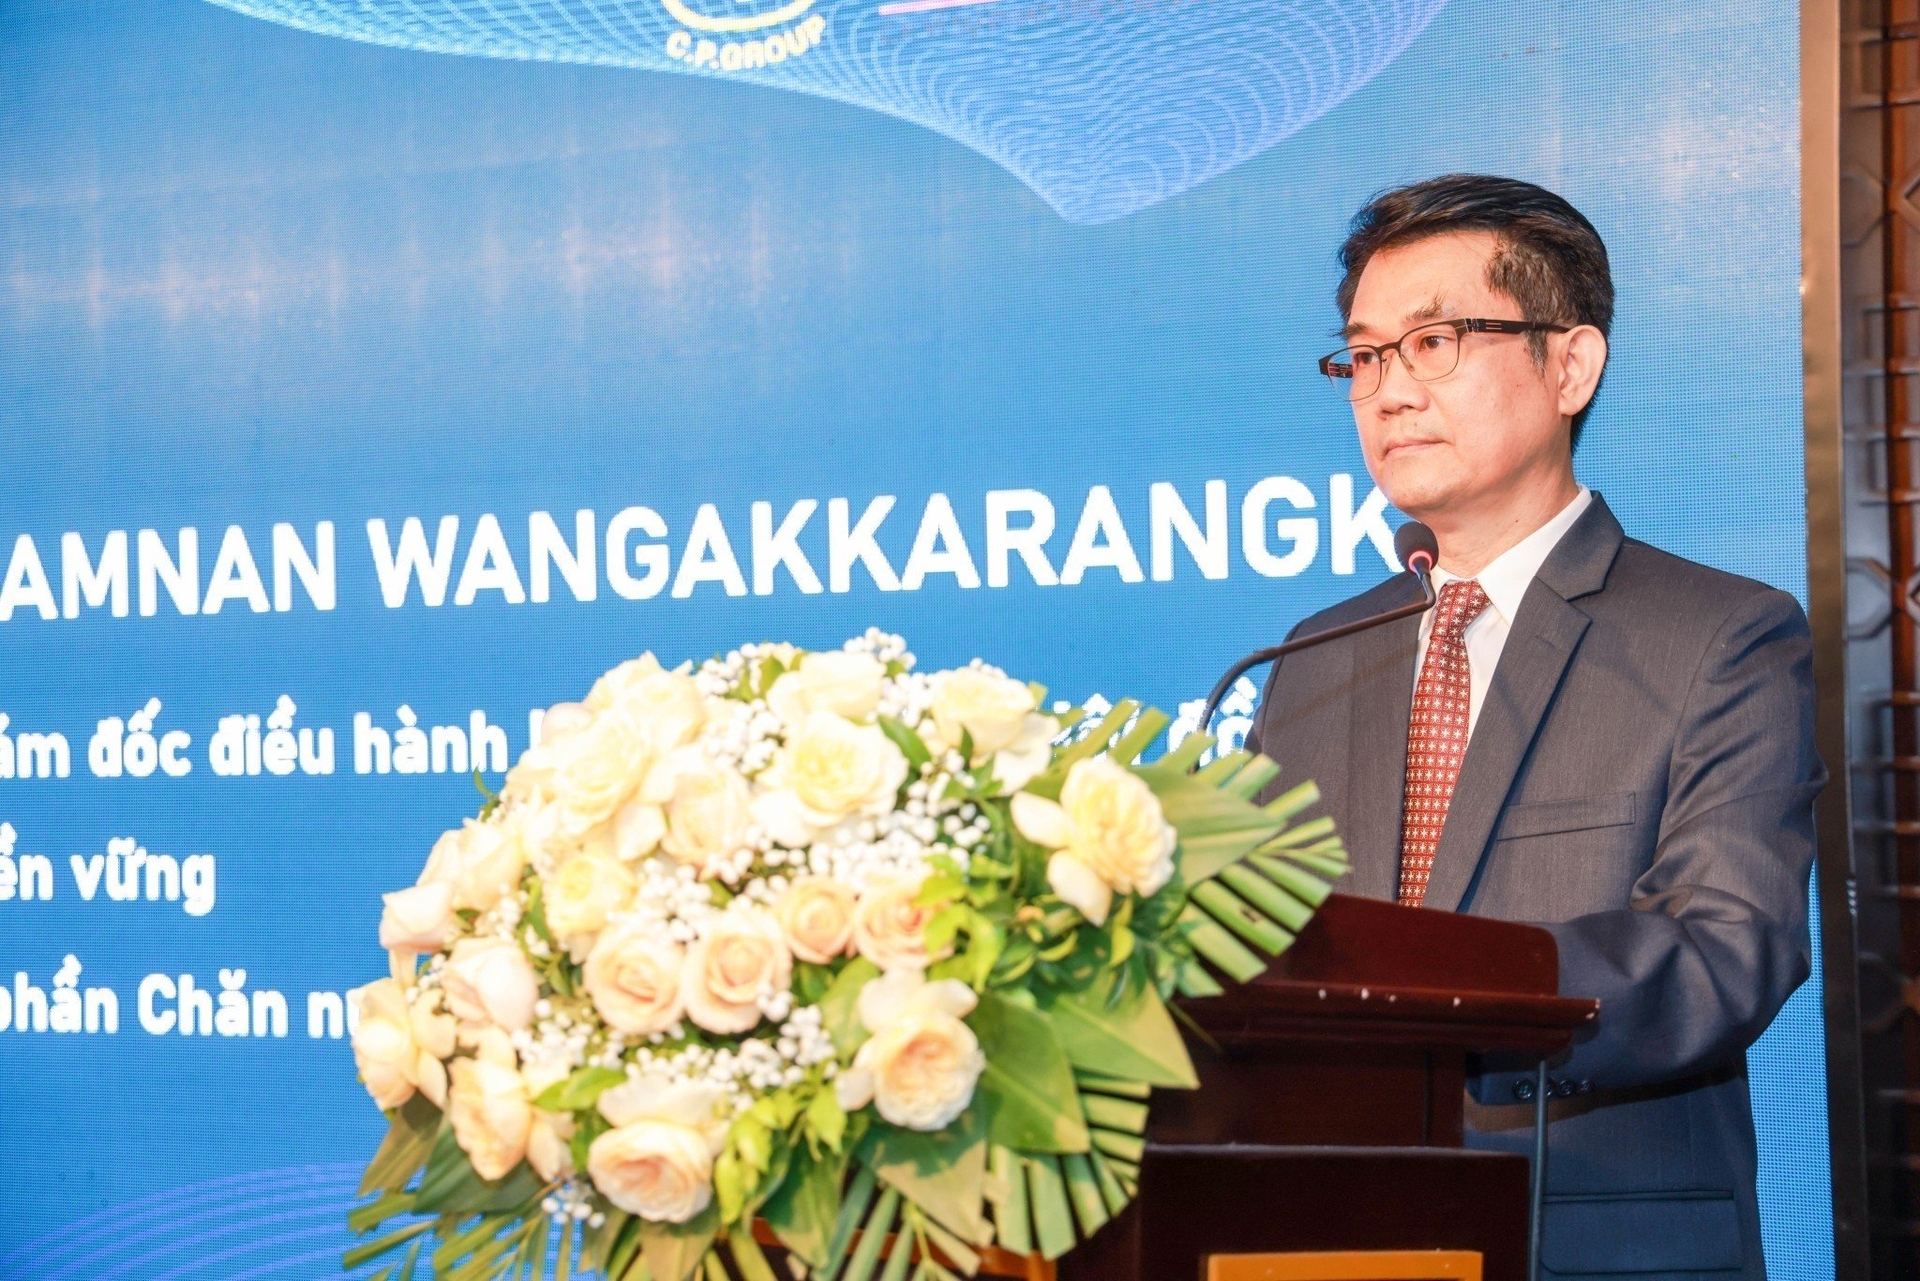 Ông Chamnan Wangakkarangkul, Phó Tổng Giám đốc điều hành CPV phát biểu tại chương trình.